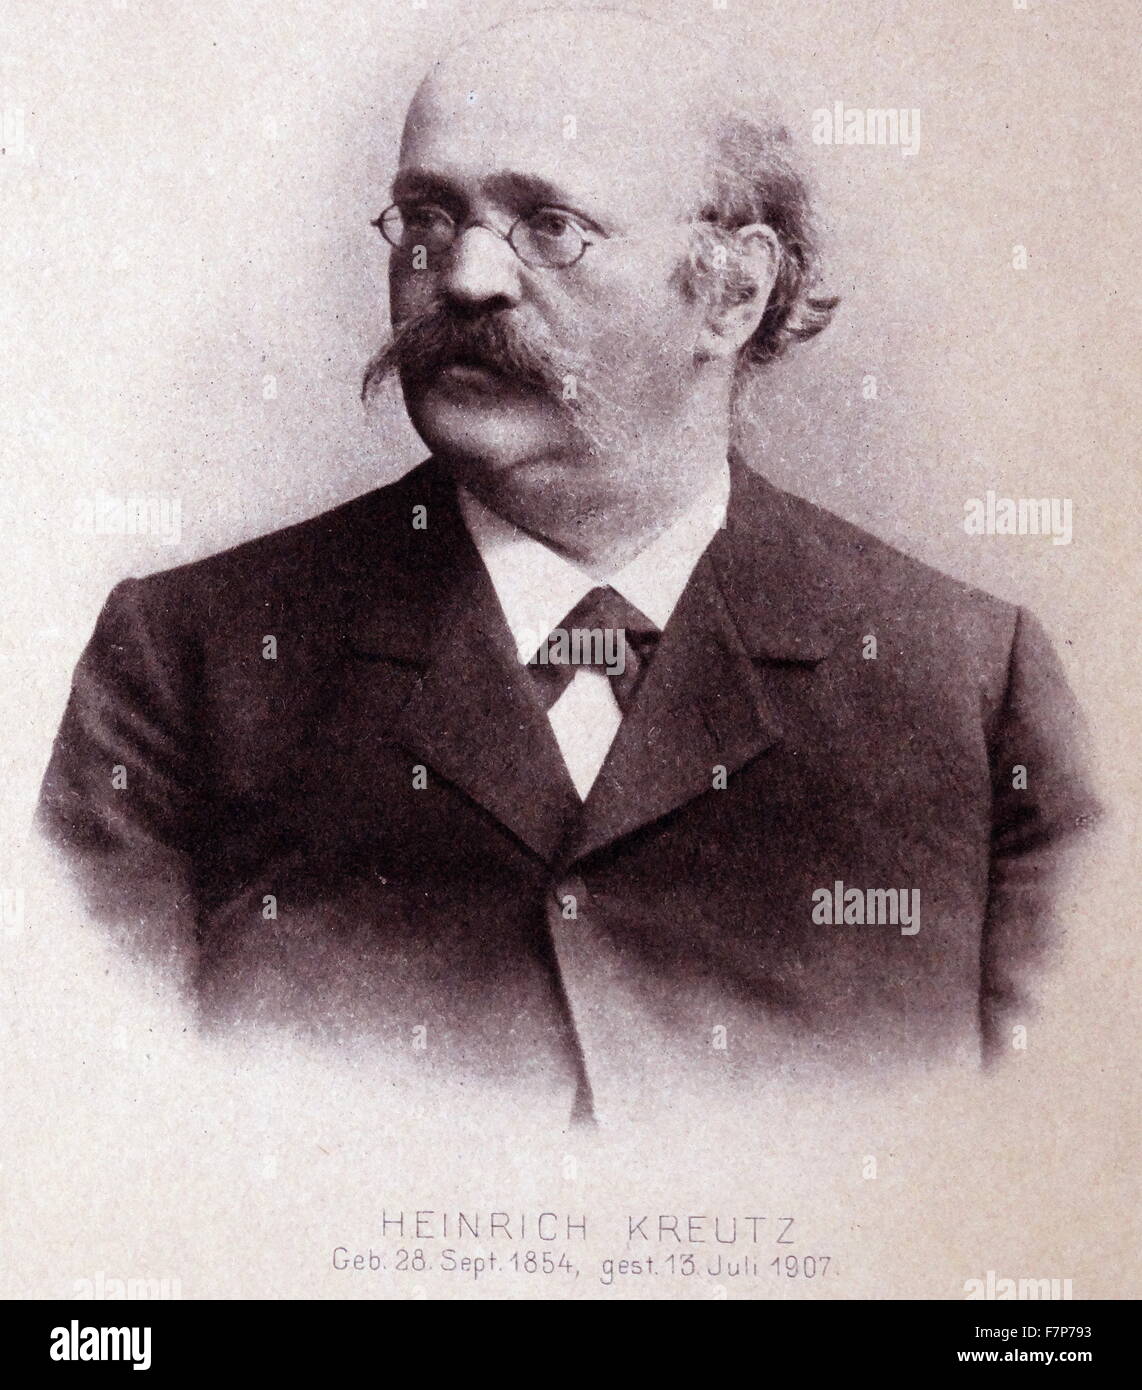 Heinrich KREUTZ (1854-1907) astronome allemand Banque D'Images